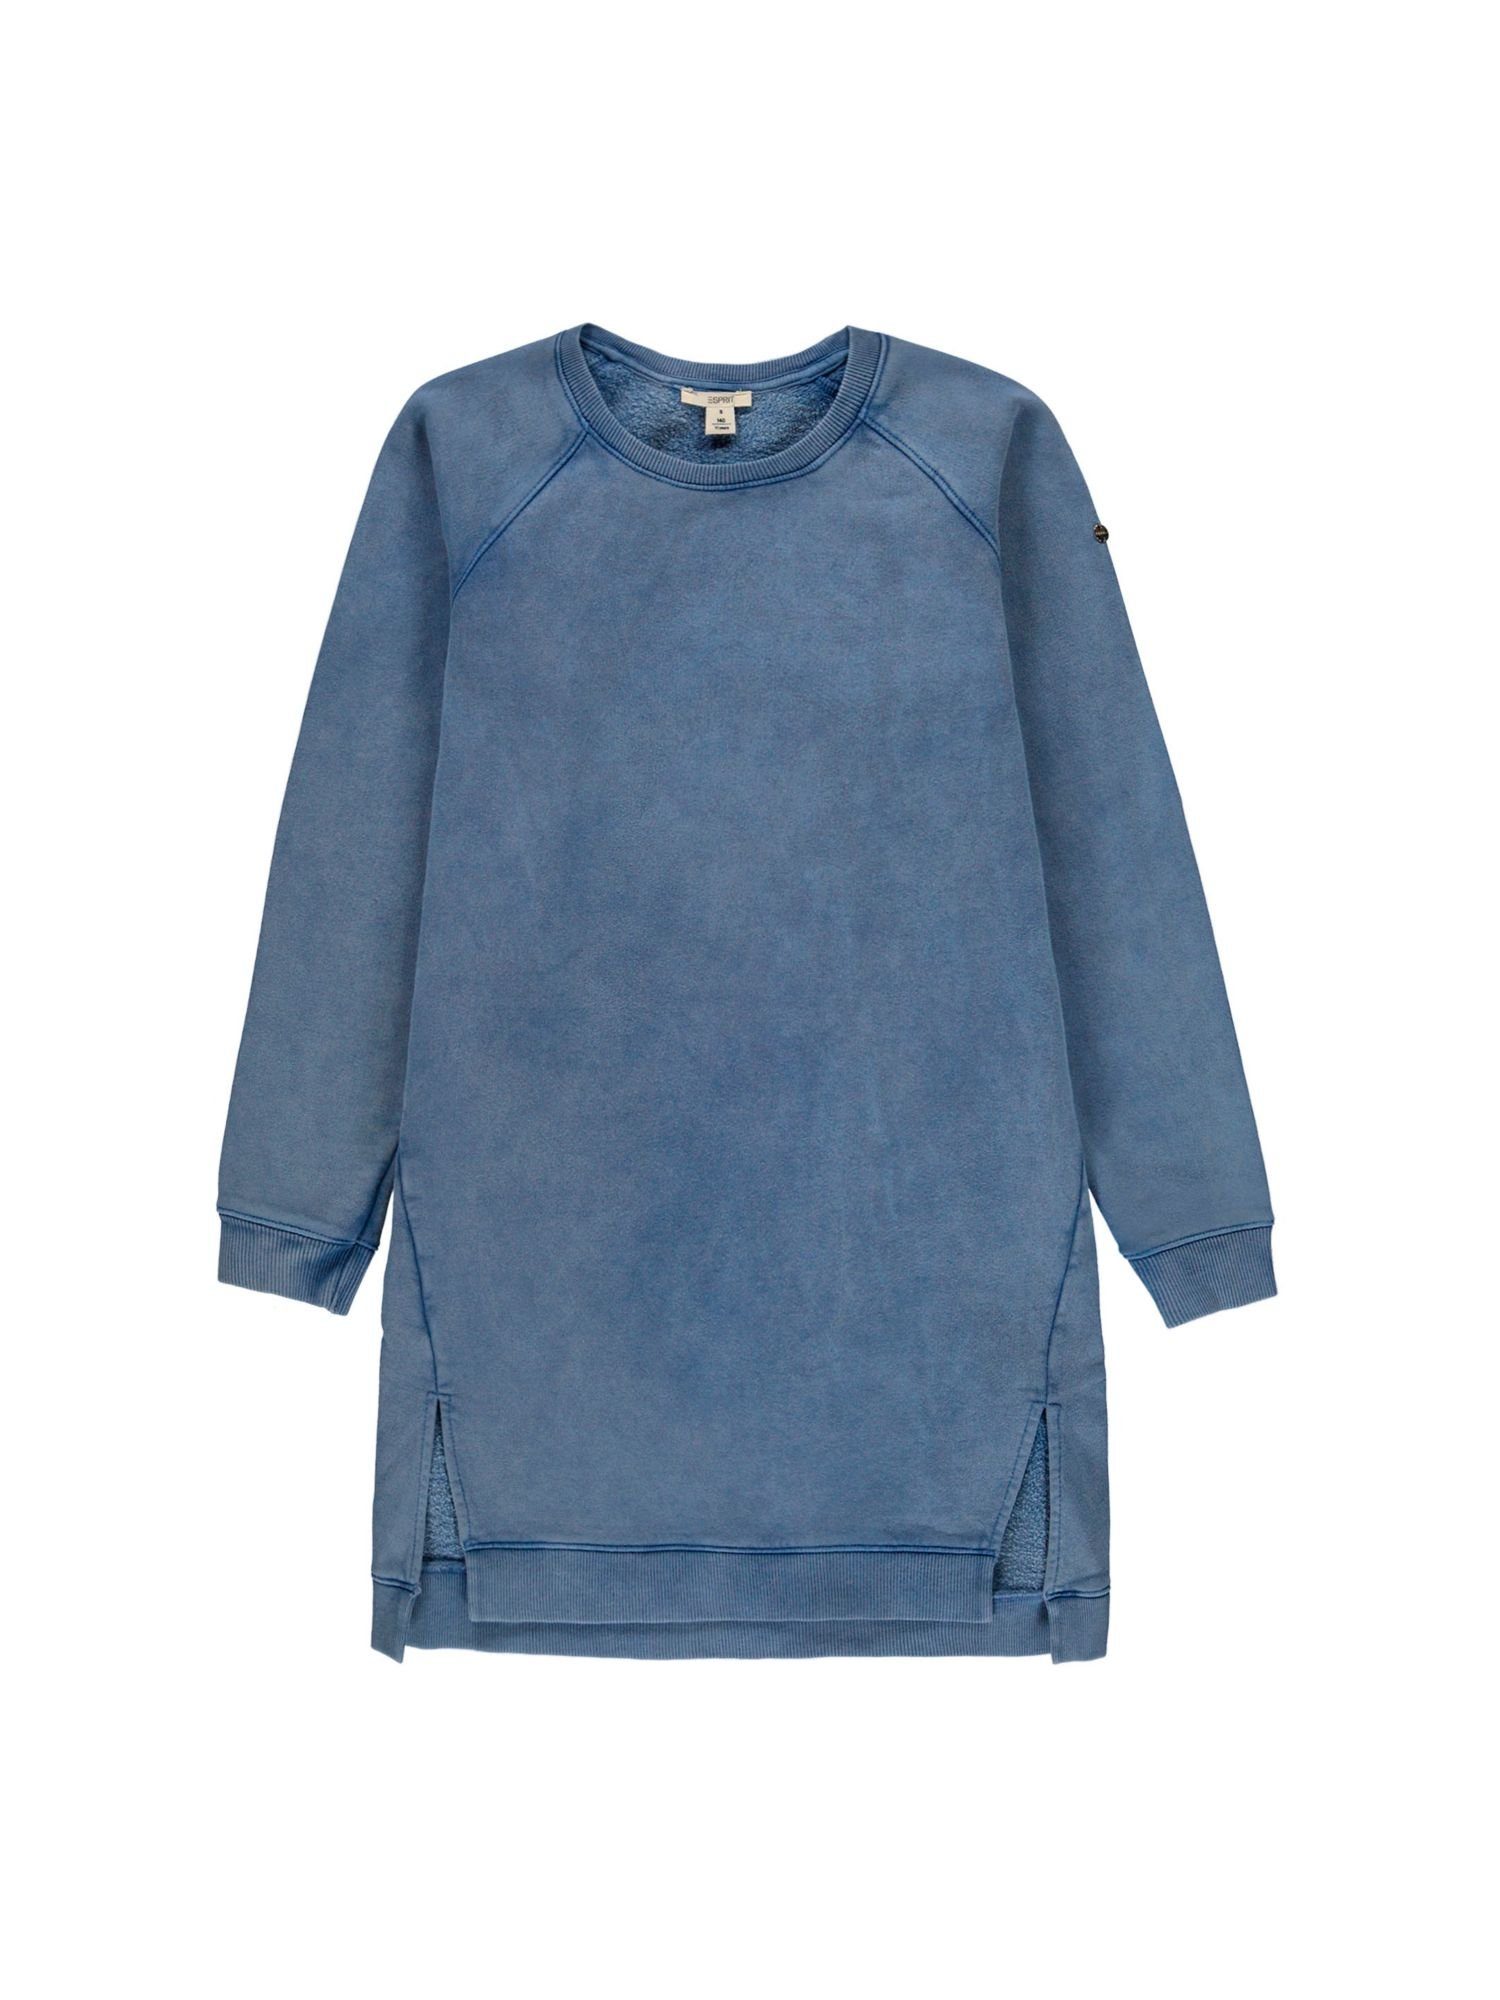 Esprit Midikleid »Sweatshirt-Kleid aus 100% Baumwolle« online kaufen | OTTO